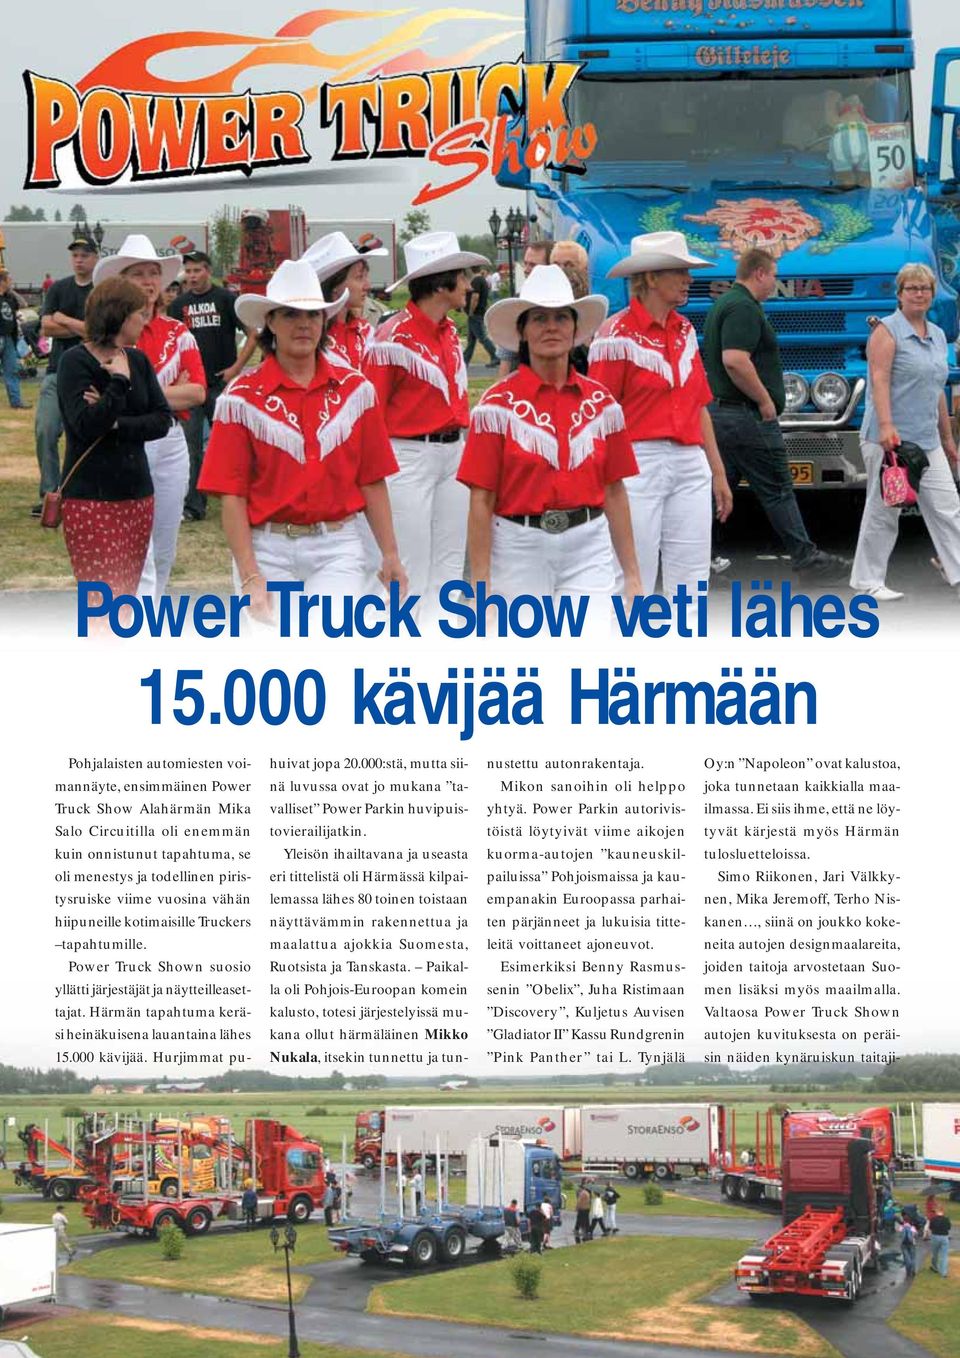 piristysruiske viime vuosina vähän hiipuneille kotimaisille Truckers tapahtumille. Power Truck Shown suosio yllätti järjestäjät ja näytteilleasettajat.